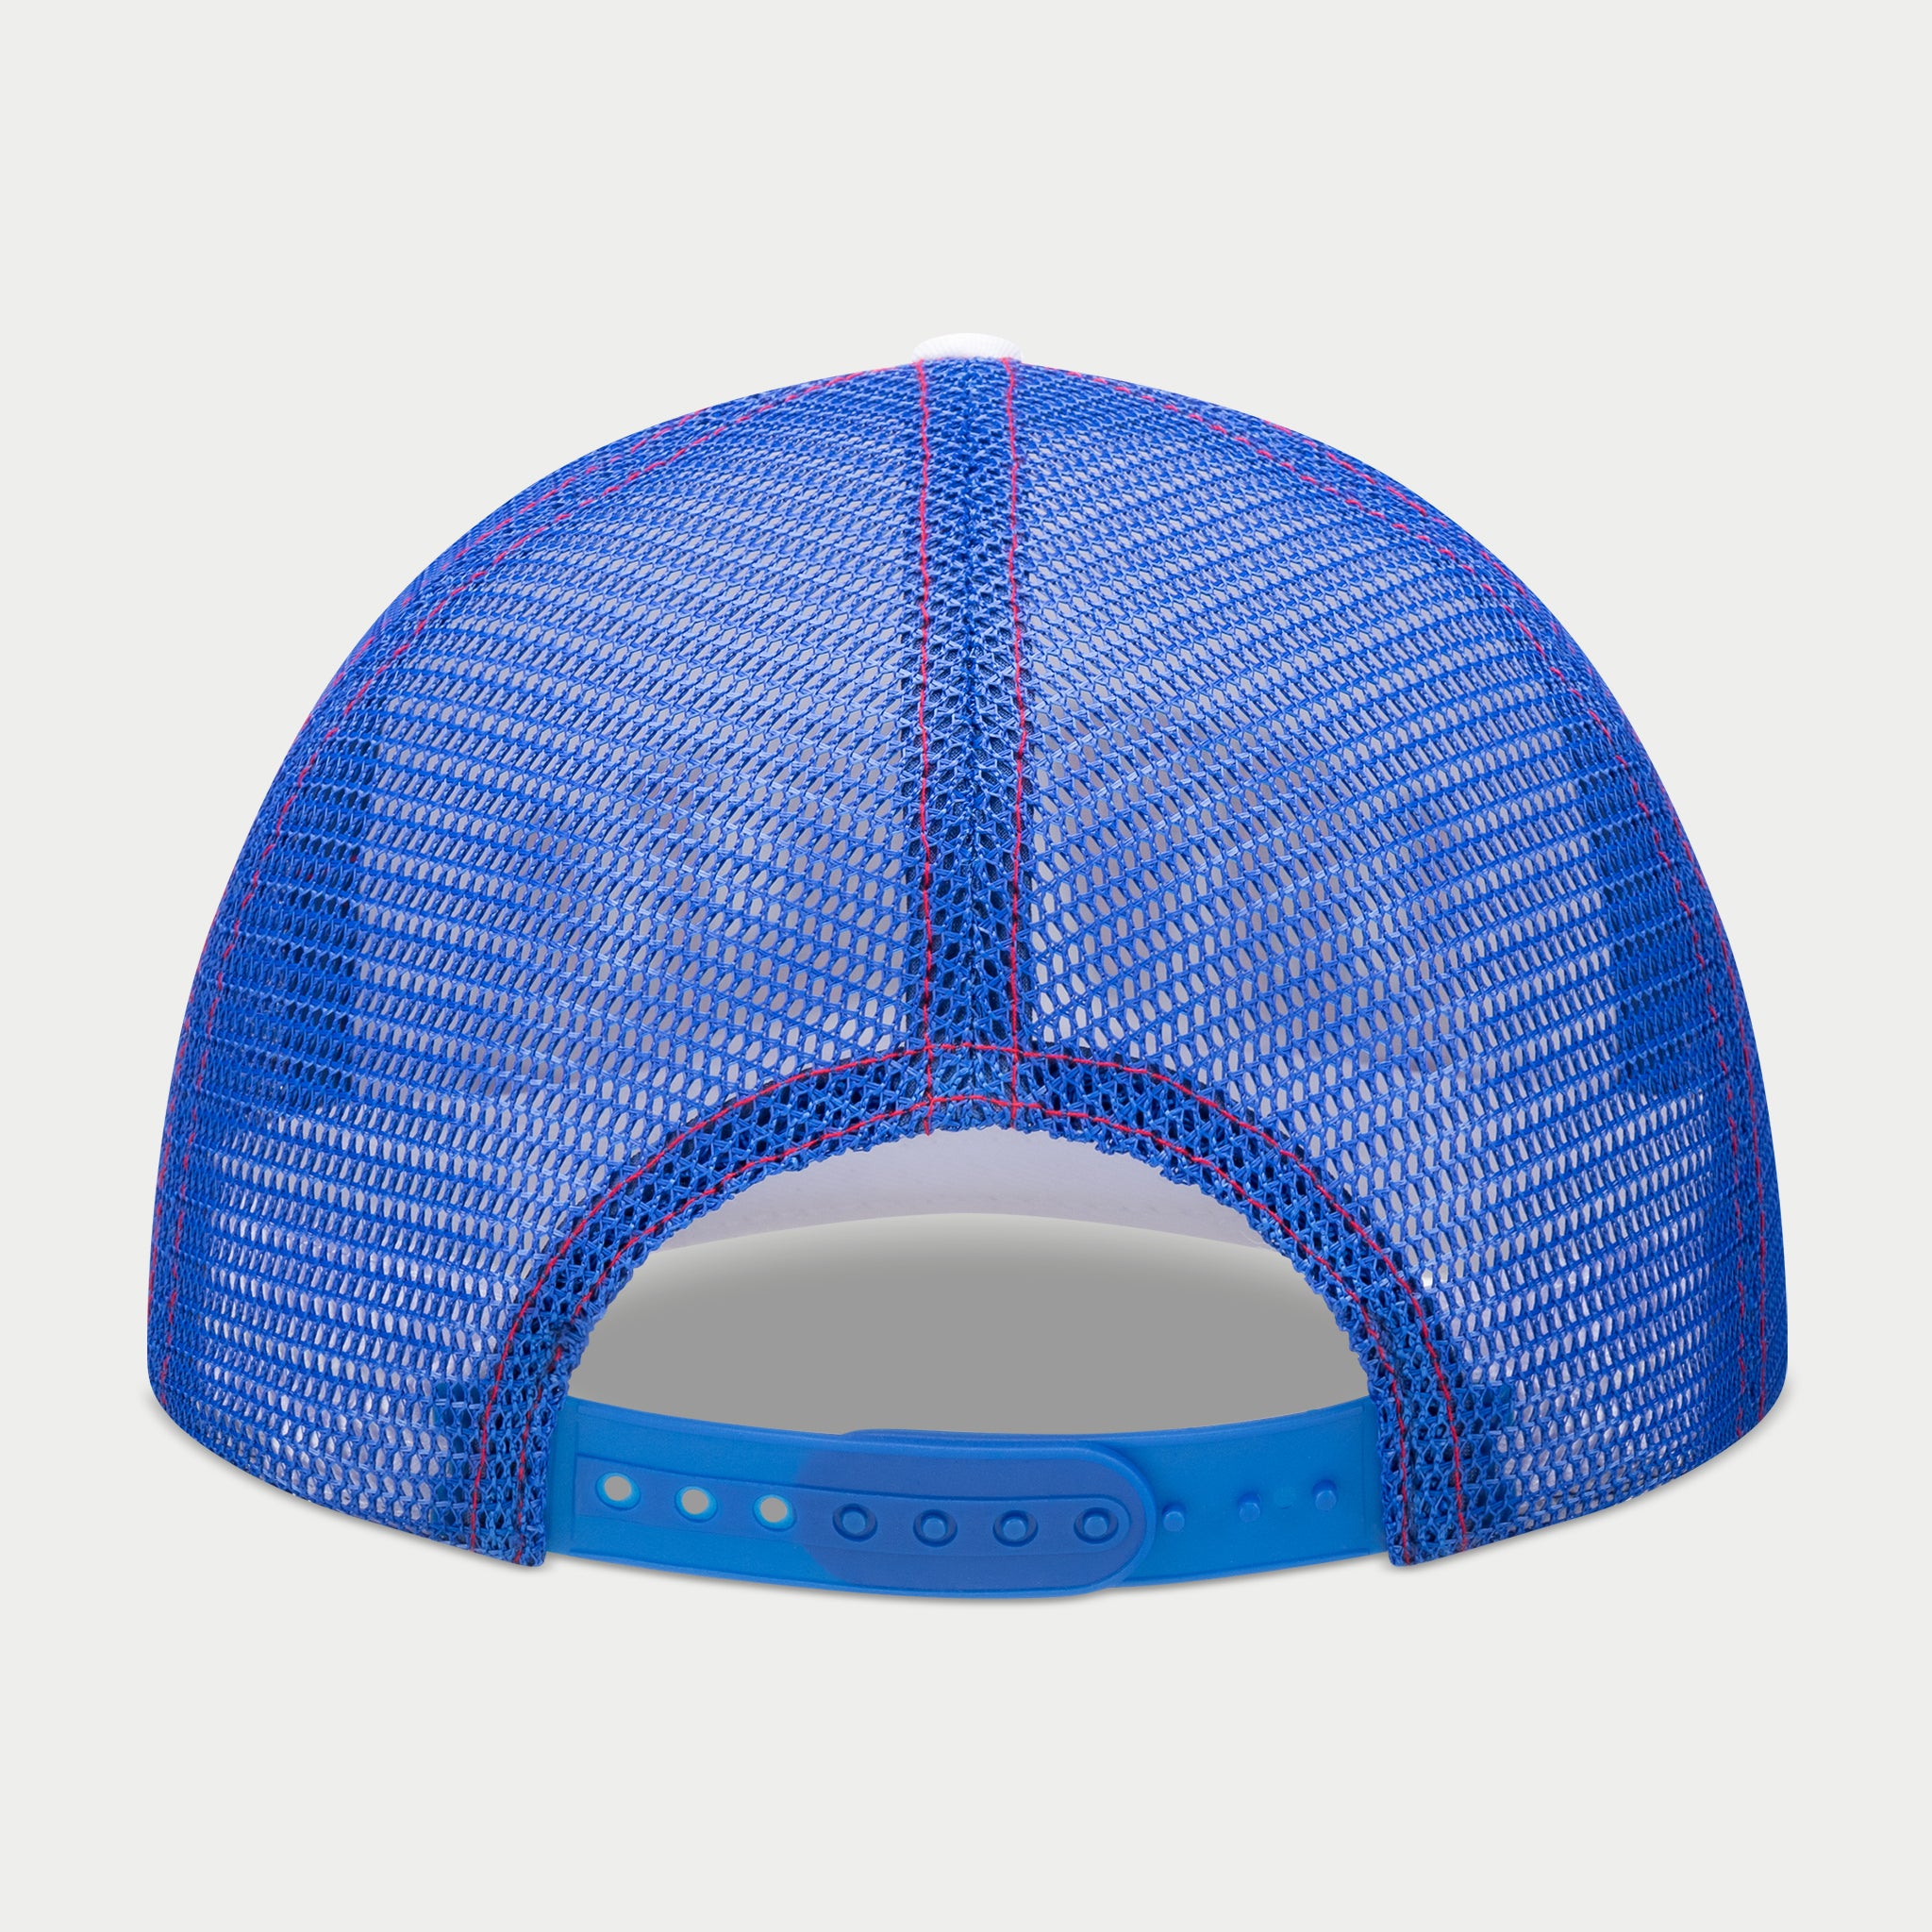 B-BALL CAP - WHITE/BLUE